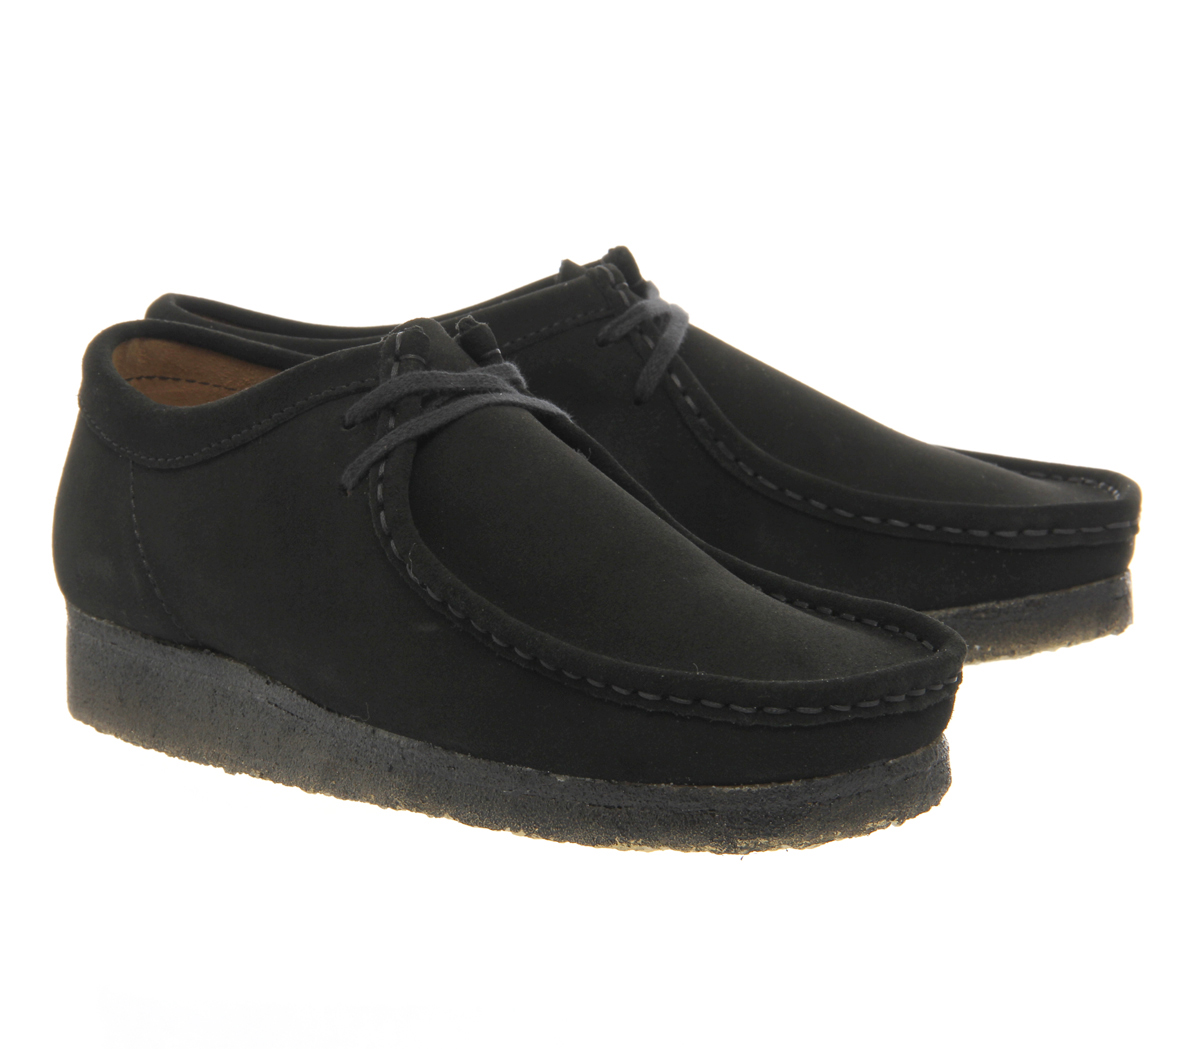 Clarks Originals Wallabee Shoes Black Suede - Casual